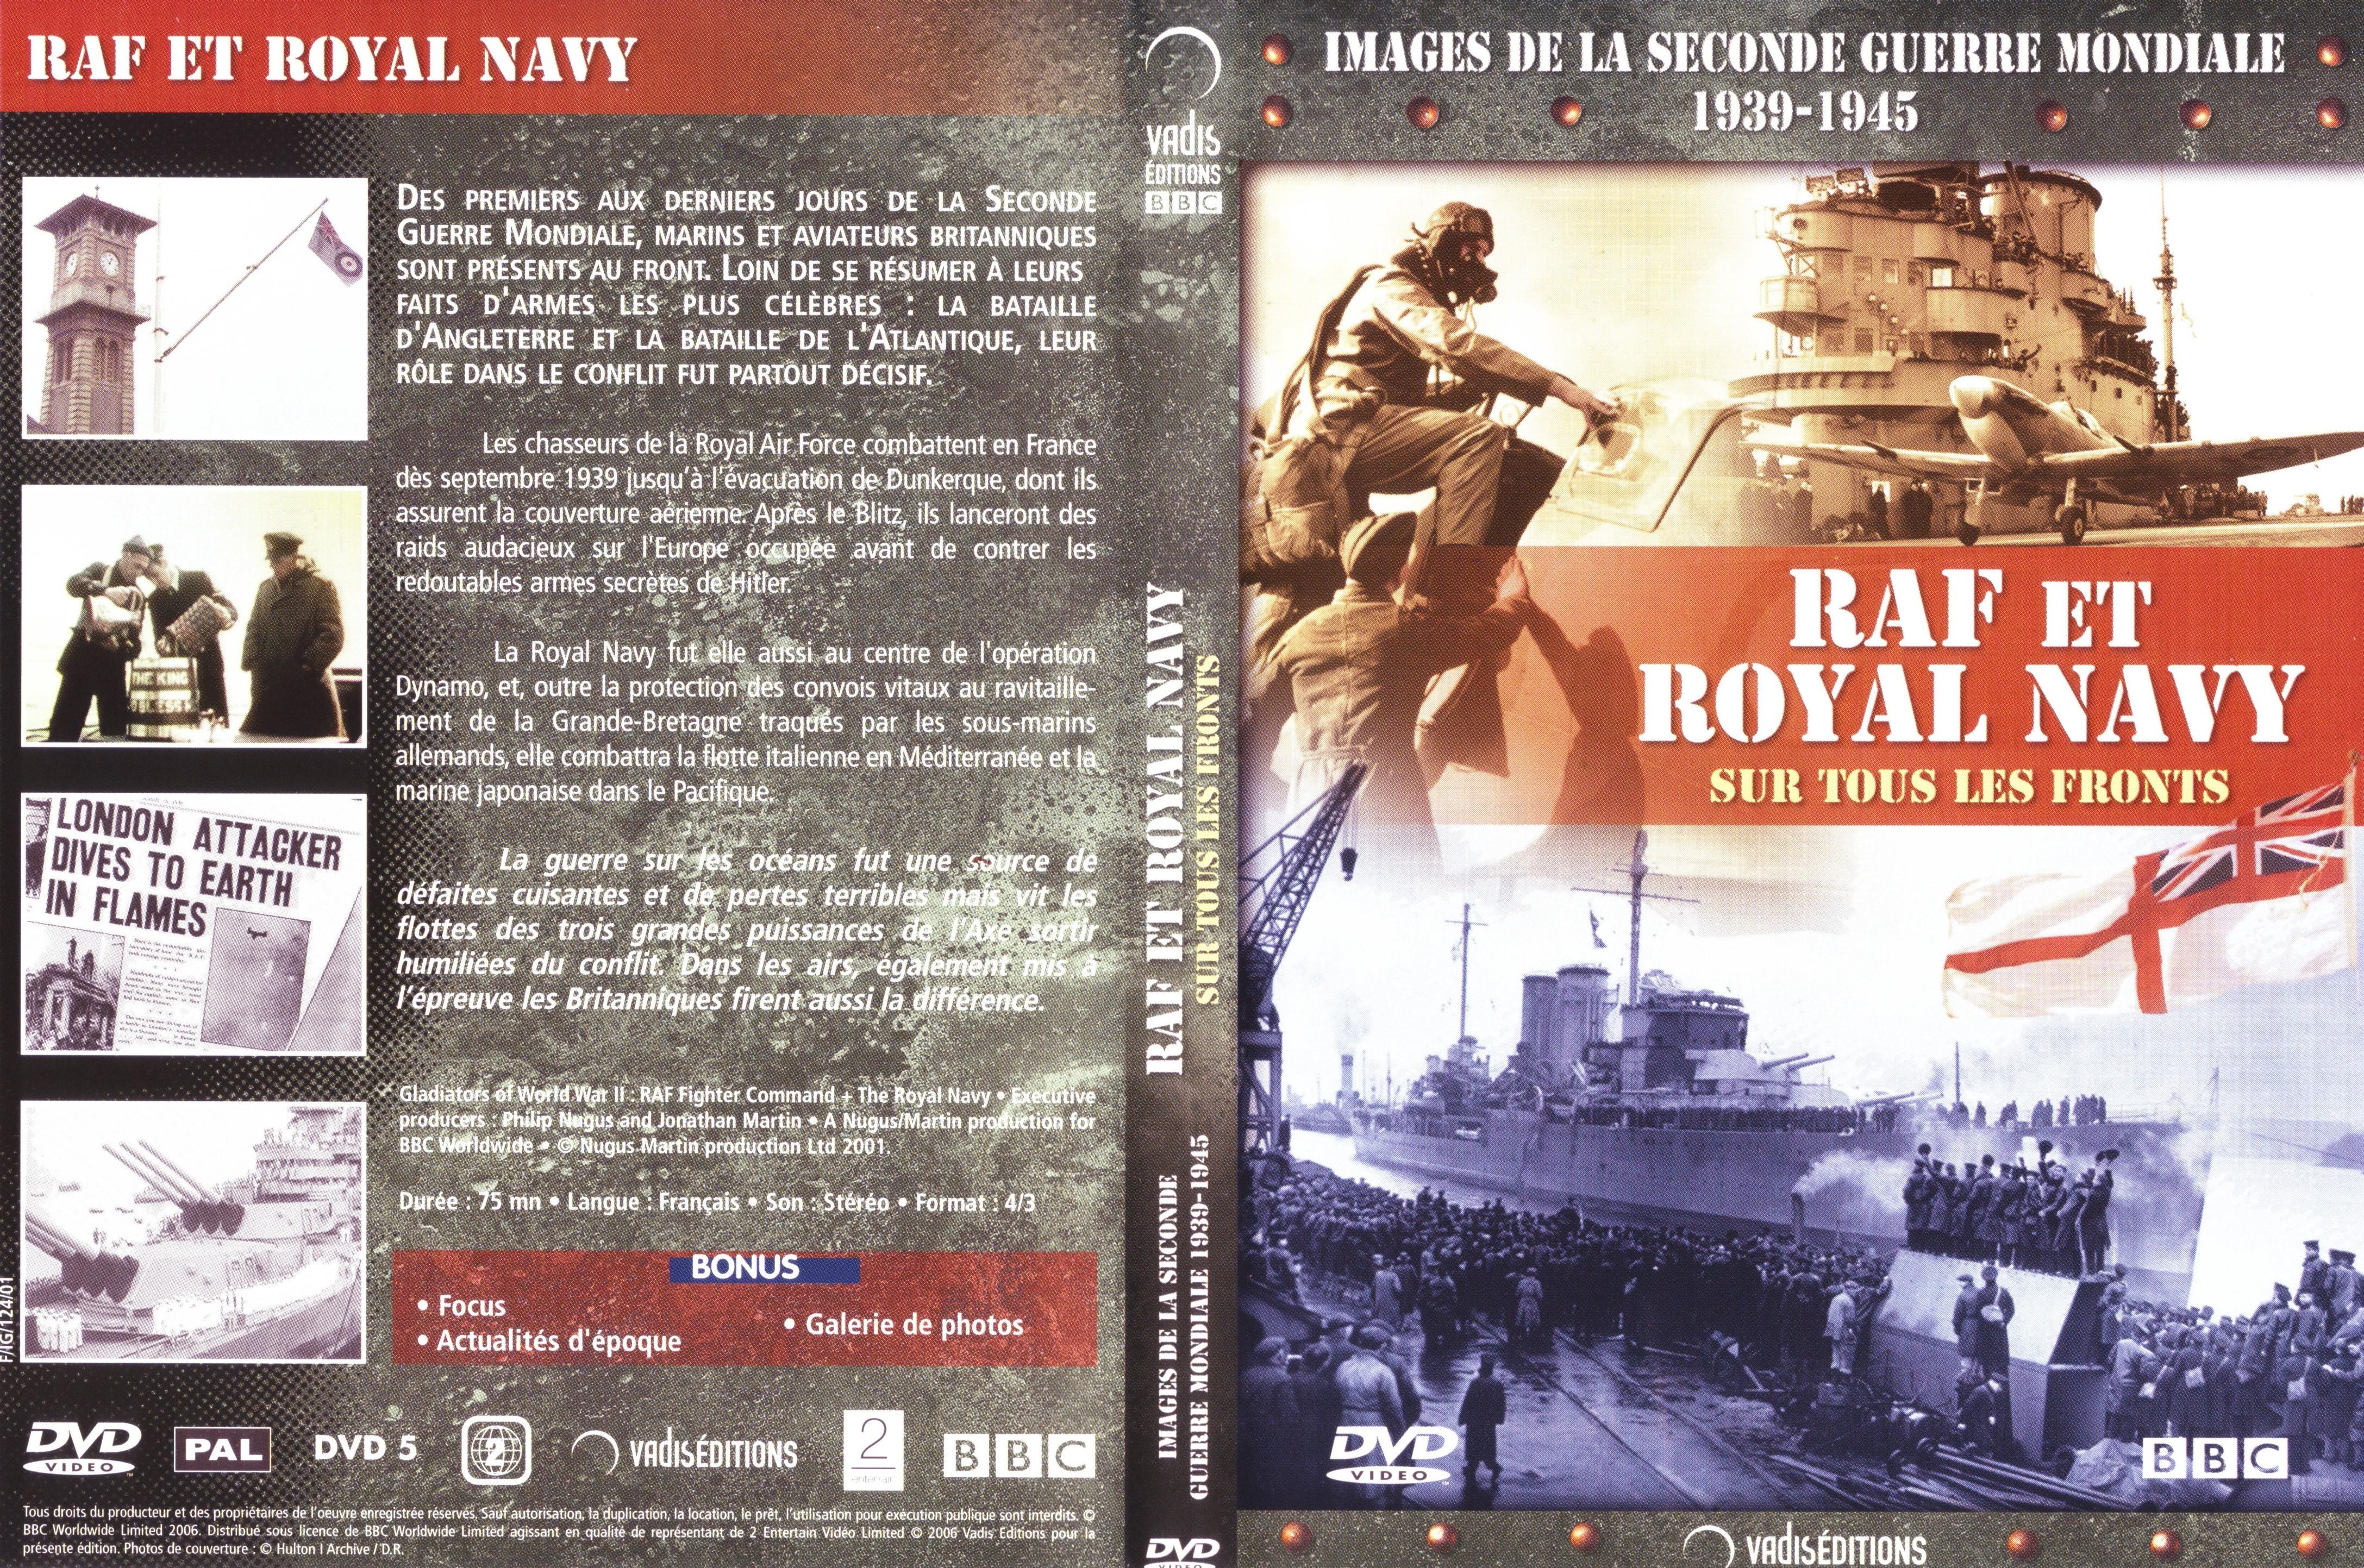 Jaquette DVD Images de la seconde guerre mondiale - RAF et Royal Navy